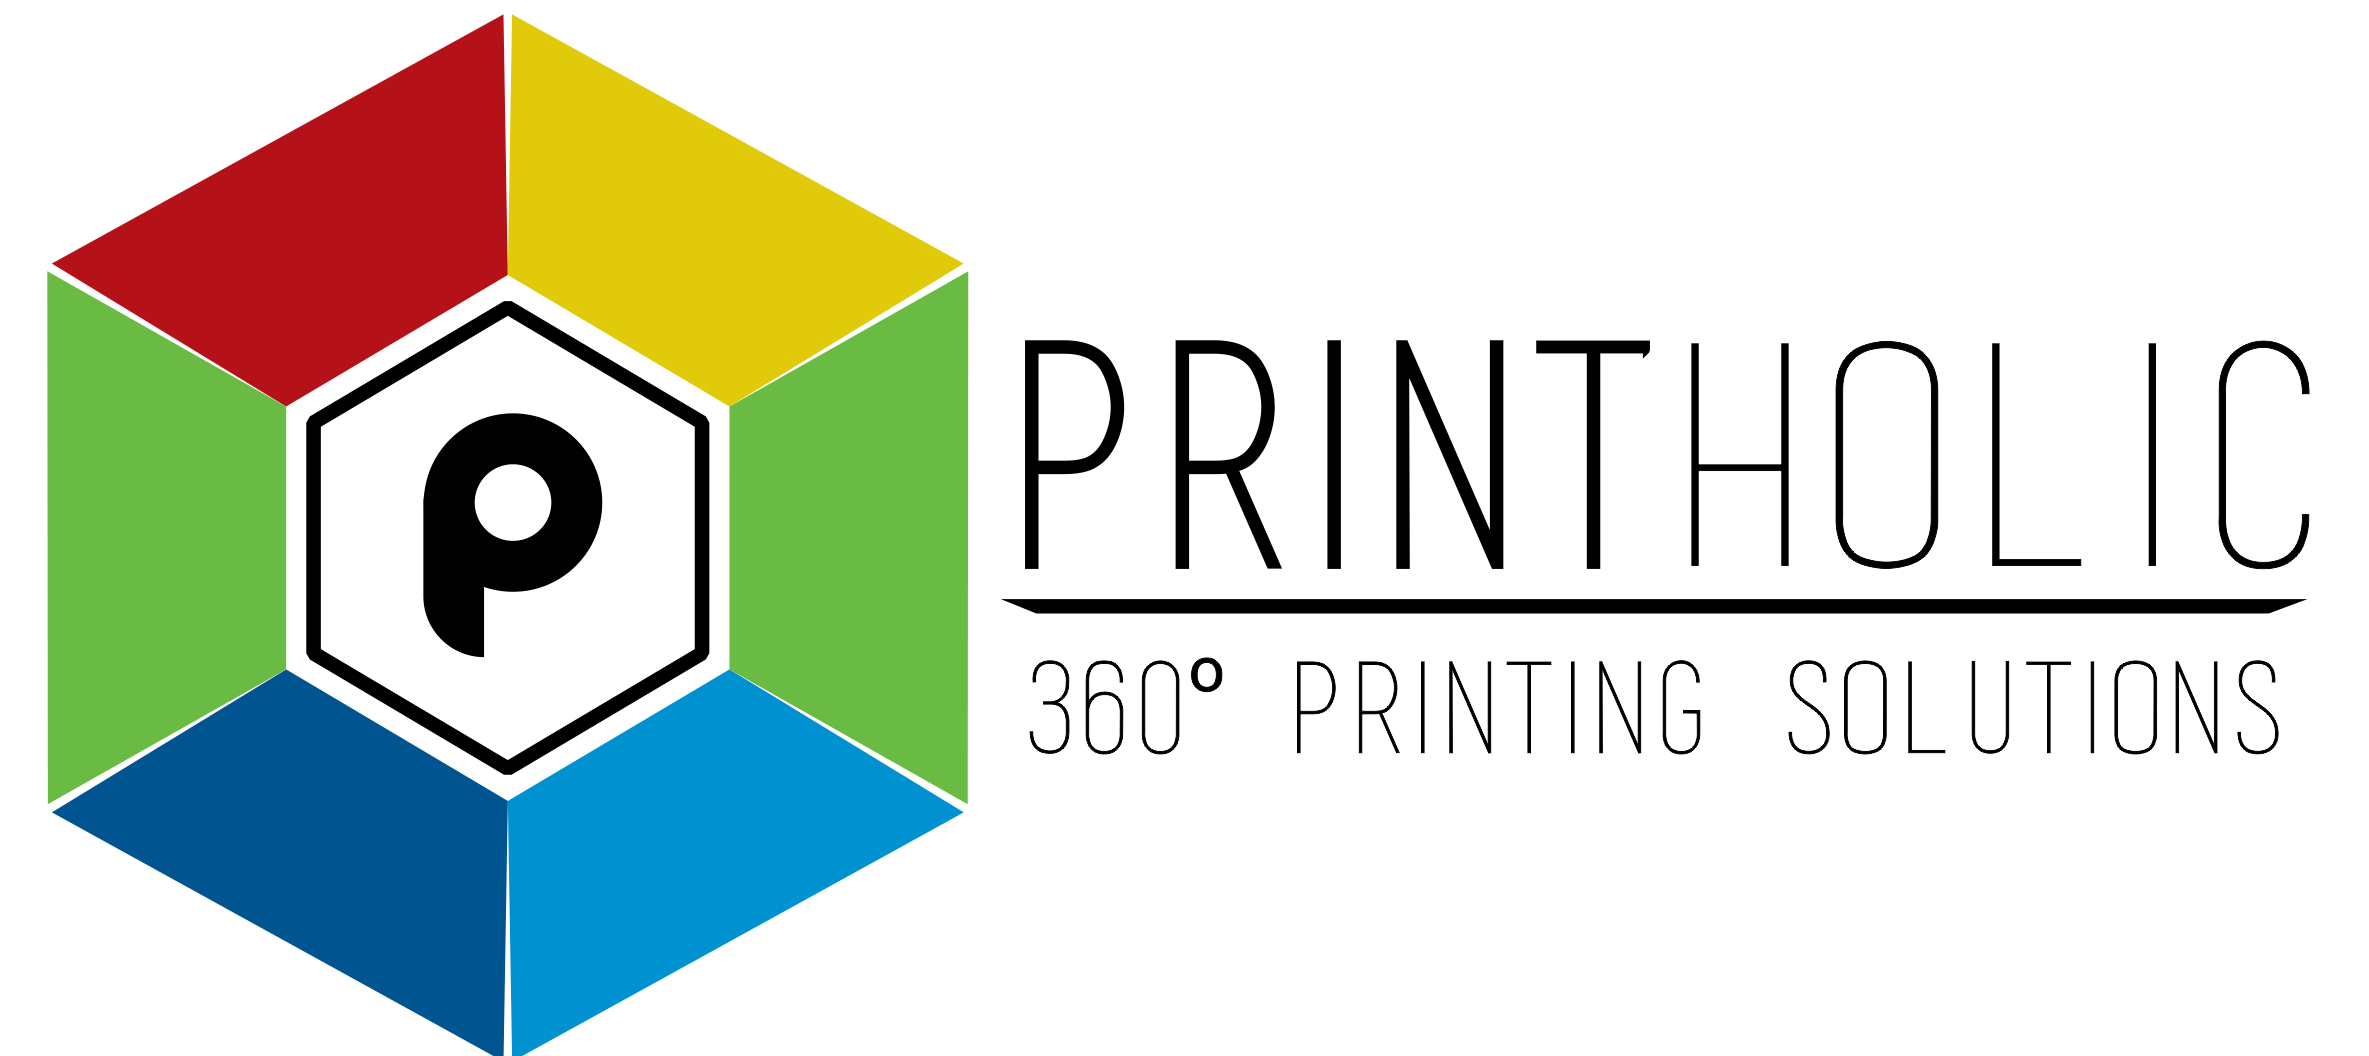 Printing Press Logo - Printers in Gurgaon, Printing Services in Gurgaon, Printing Press ...